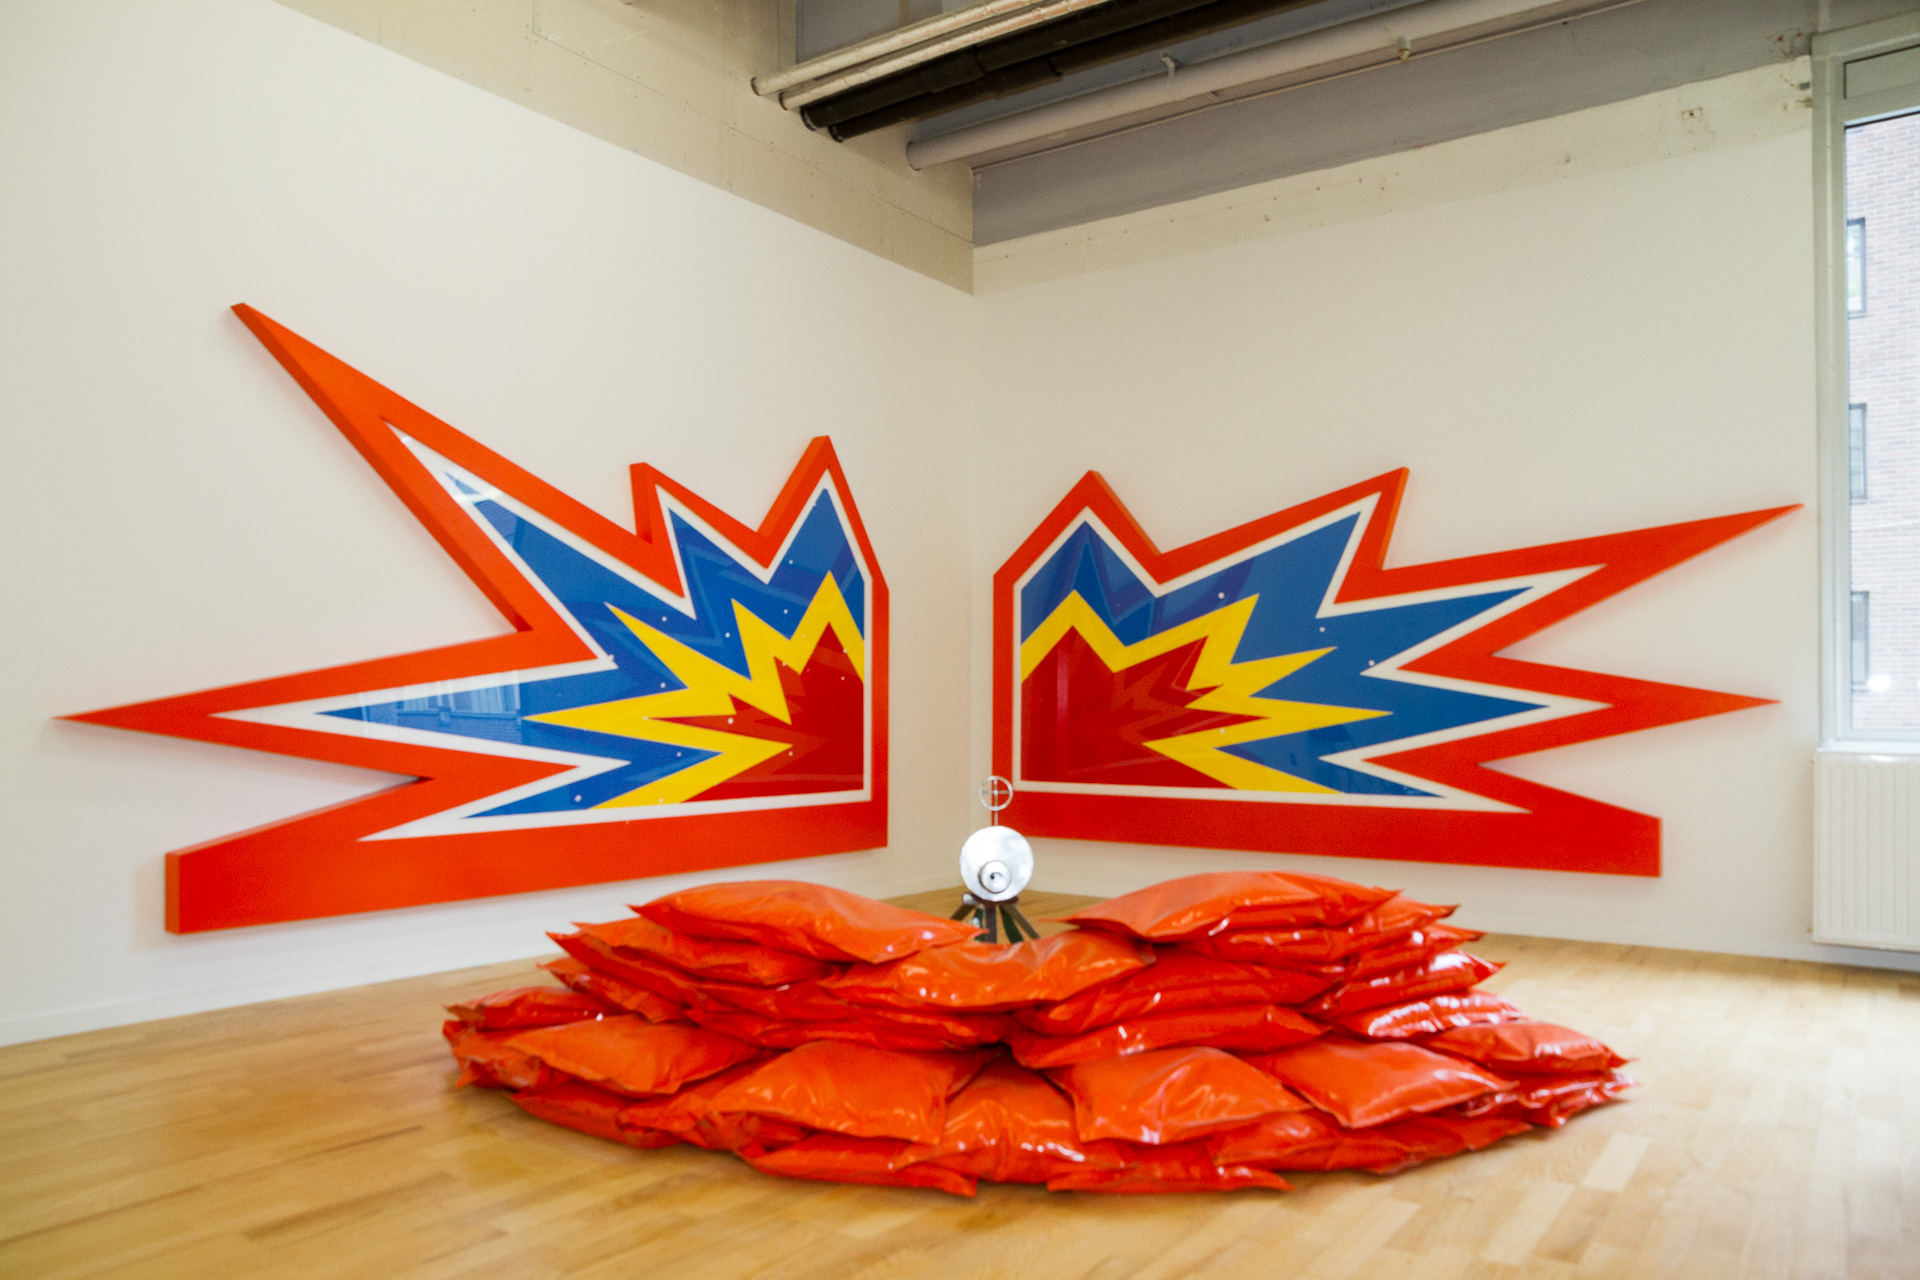 I ett hörn av ett rum står en installation som föreställer en kulspruta i mitten och framför kulsprutan ligger röda säckar på varandra som skapar en liten mur. På vägen i bakgrunden sitter två stora skulpturer som föreställer två explosioner gjorda i serietidnings tecknat format.